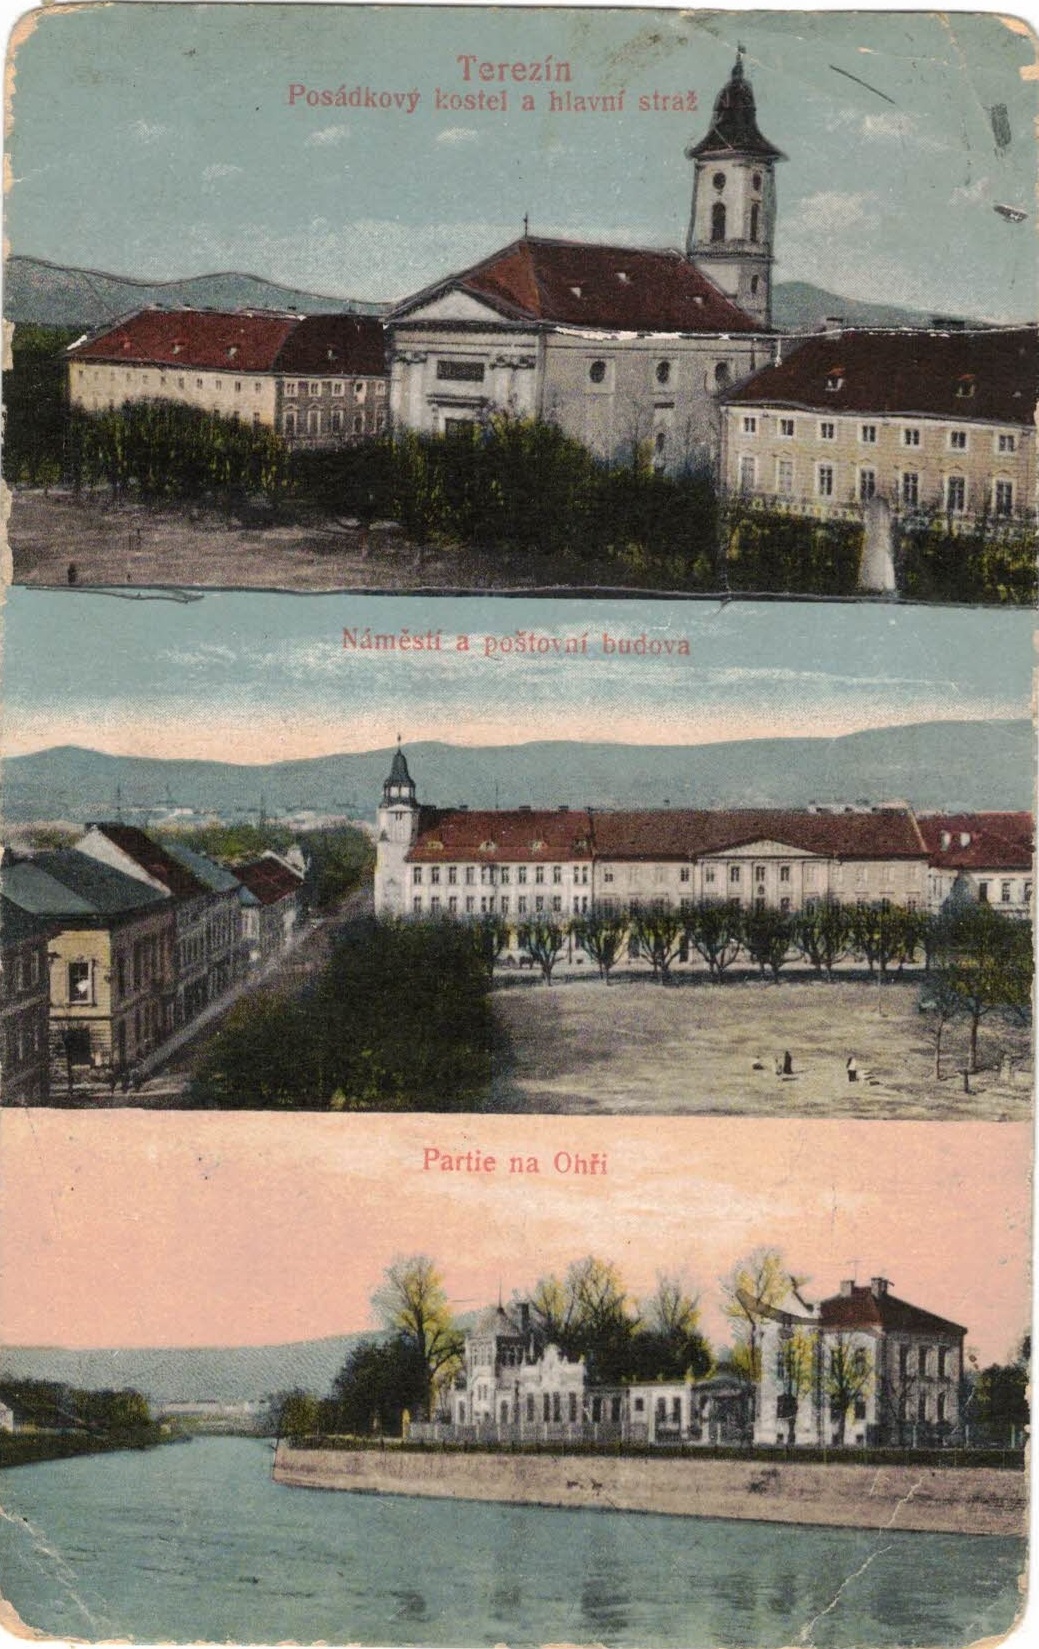 Terezín (1918)